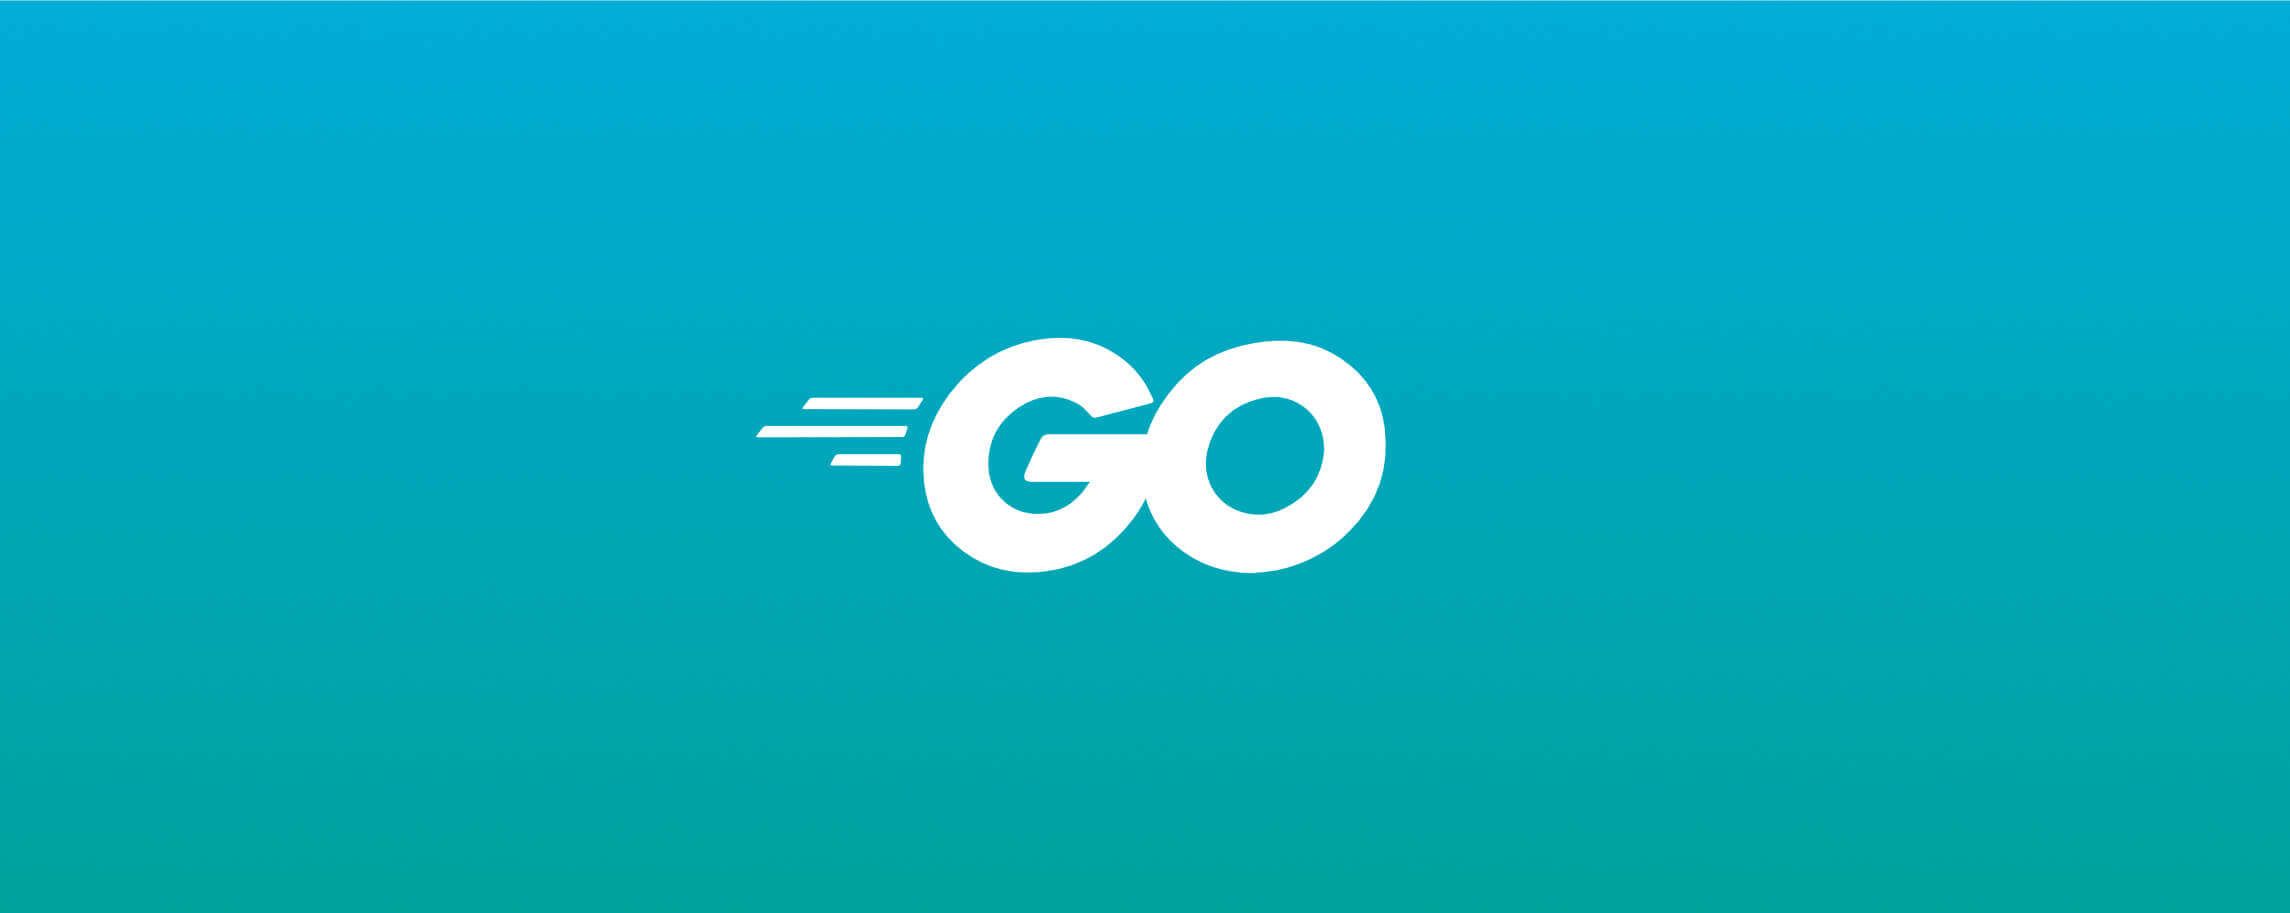 The Go branding